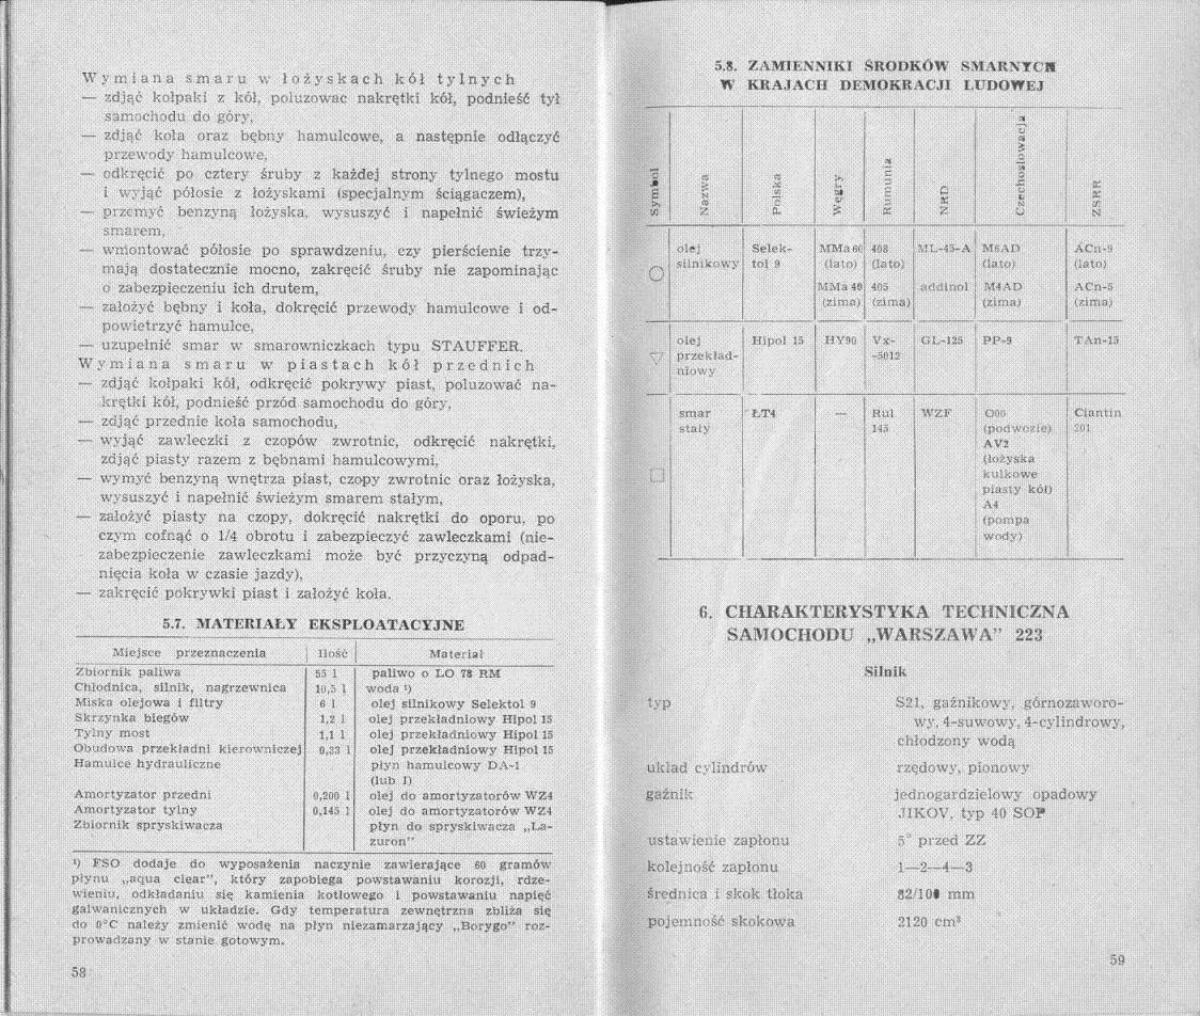 FSO Warszawa instrukcja obslugi / page 29